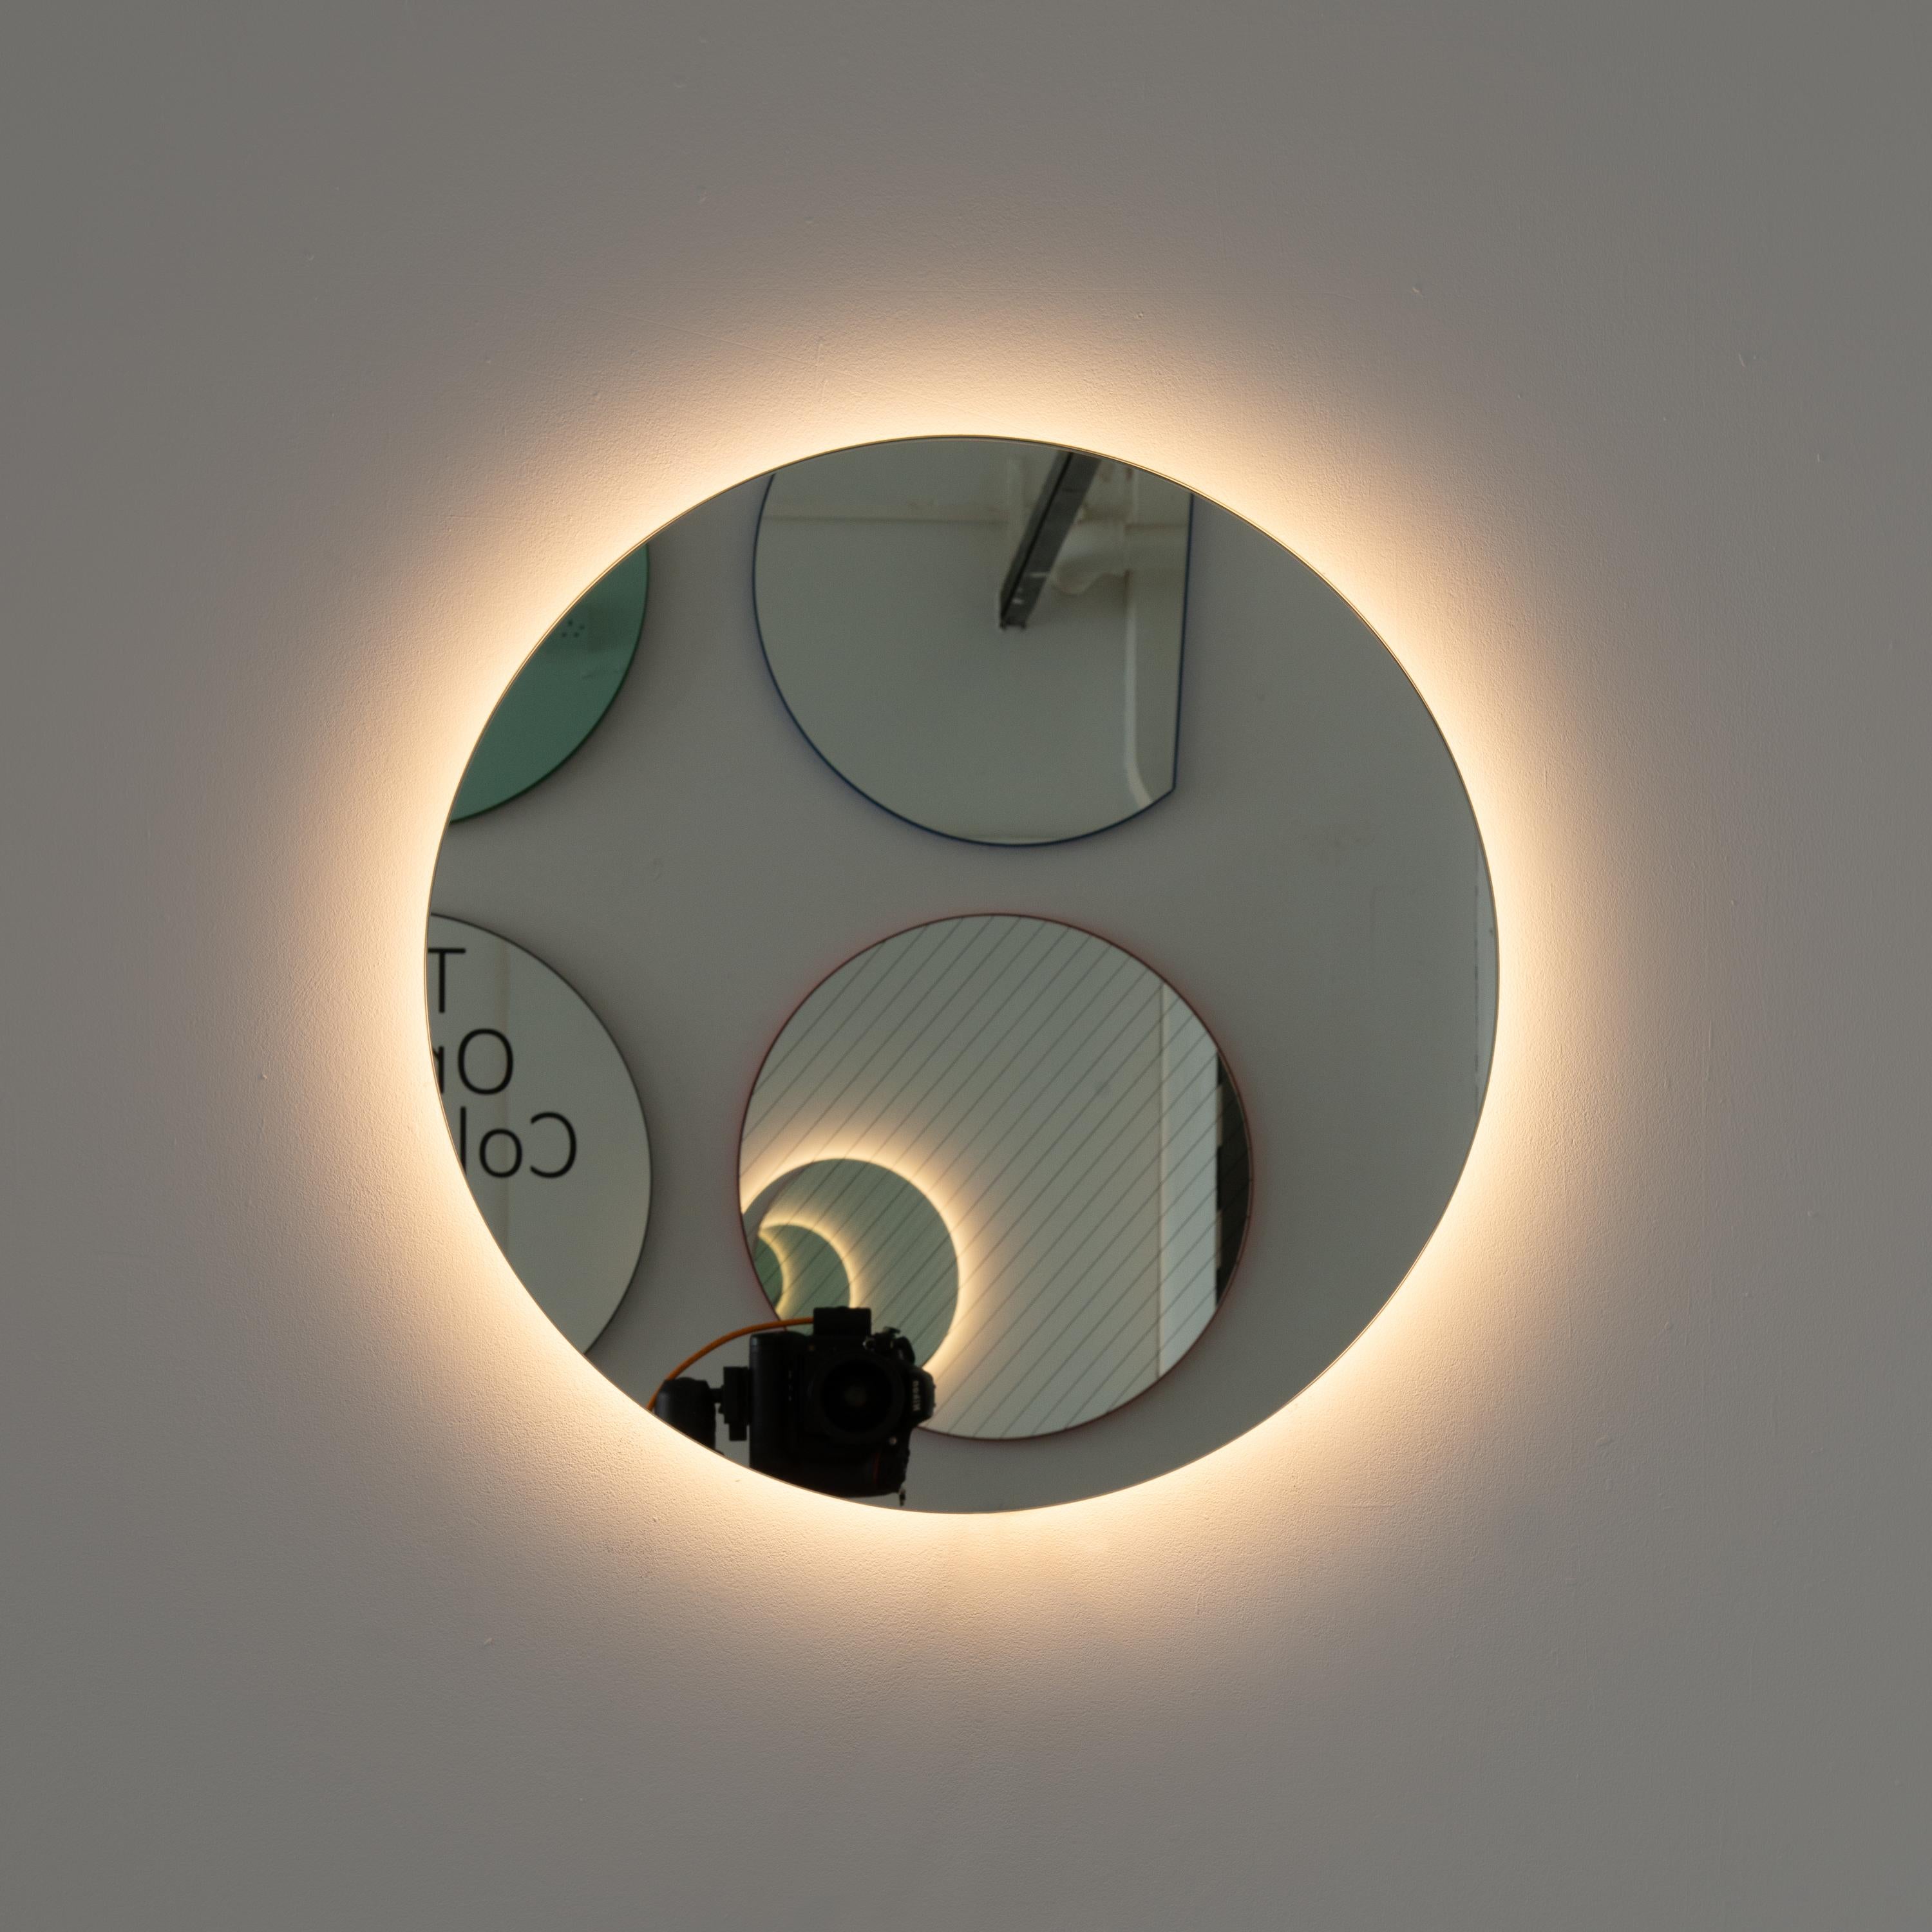 Zeitgenössischer runder rahmenloser Spiegel mit Hintergrundbeleuchtung und Schwebeeffekt. Hochwertiges Design, das dafür sorgt, dass der Spiegel perfekt parallel zur Wand steht. Entworfen und hergestellt in London, UK.

Ausgestattet mit